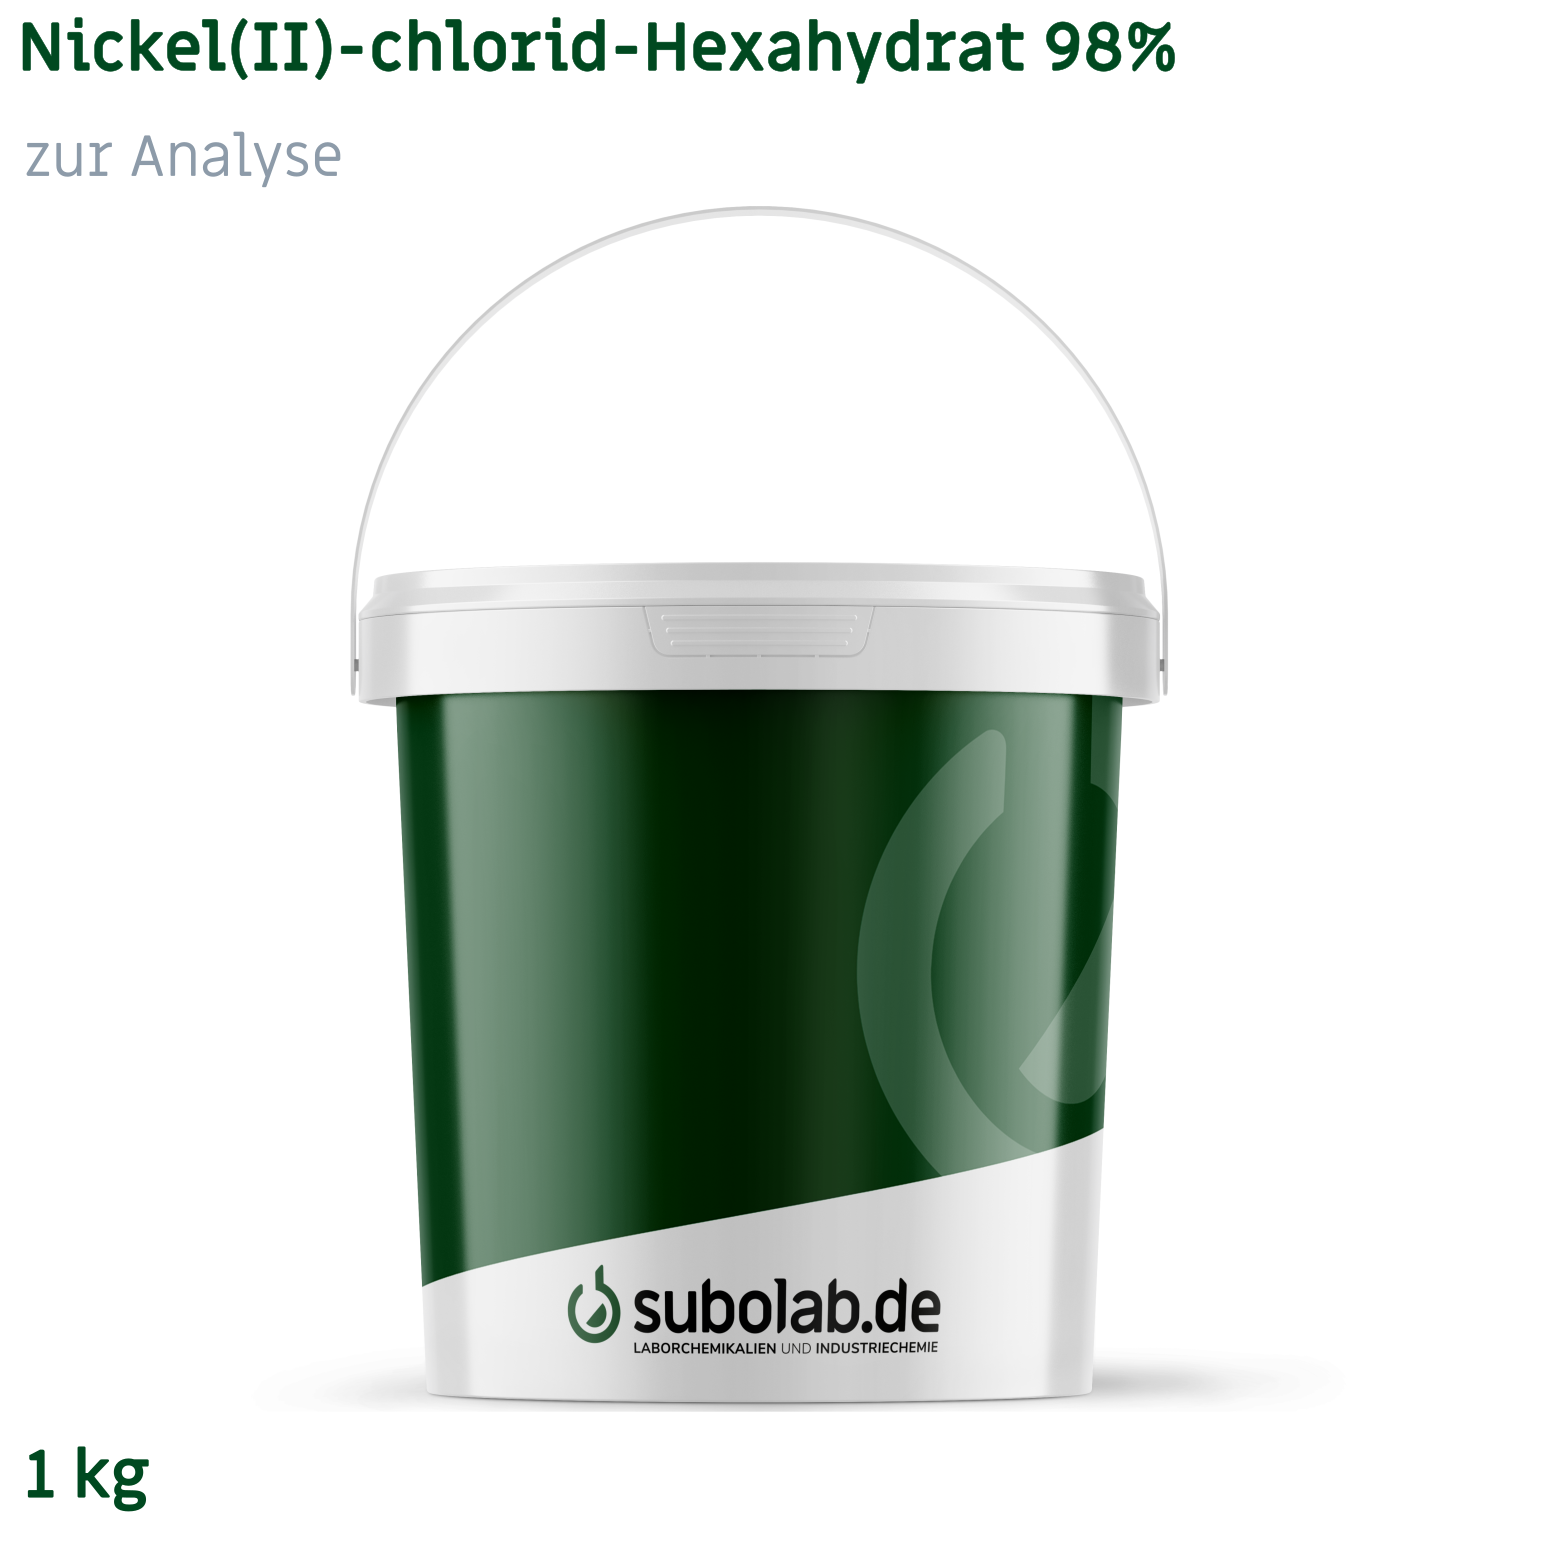 Bild von Nickel(II)-chlorid - Hexahydrat 98% zur Analyse (1 kg)